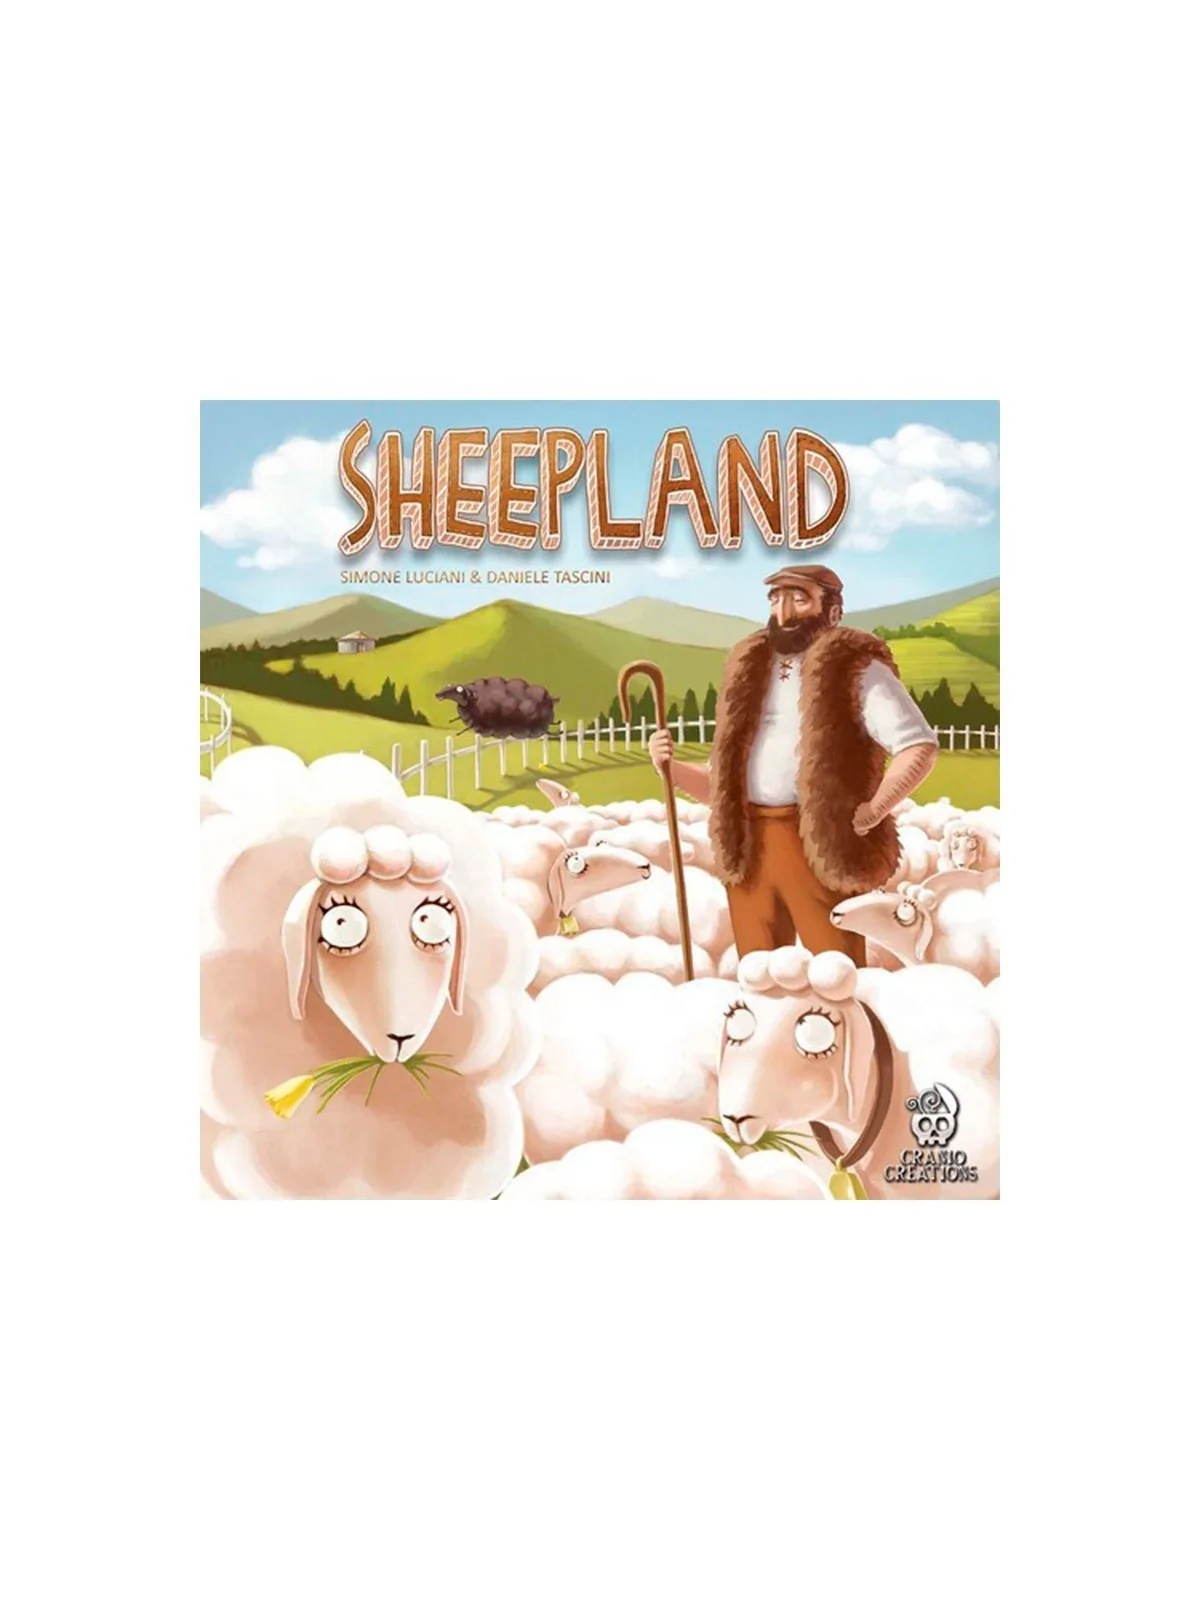 Comprar Sheepland barato al mejor precio 18,00 € de Games for Gamers